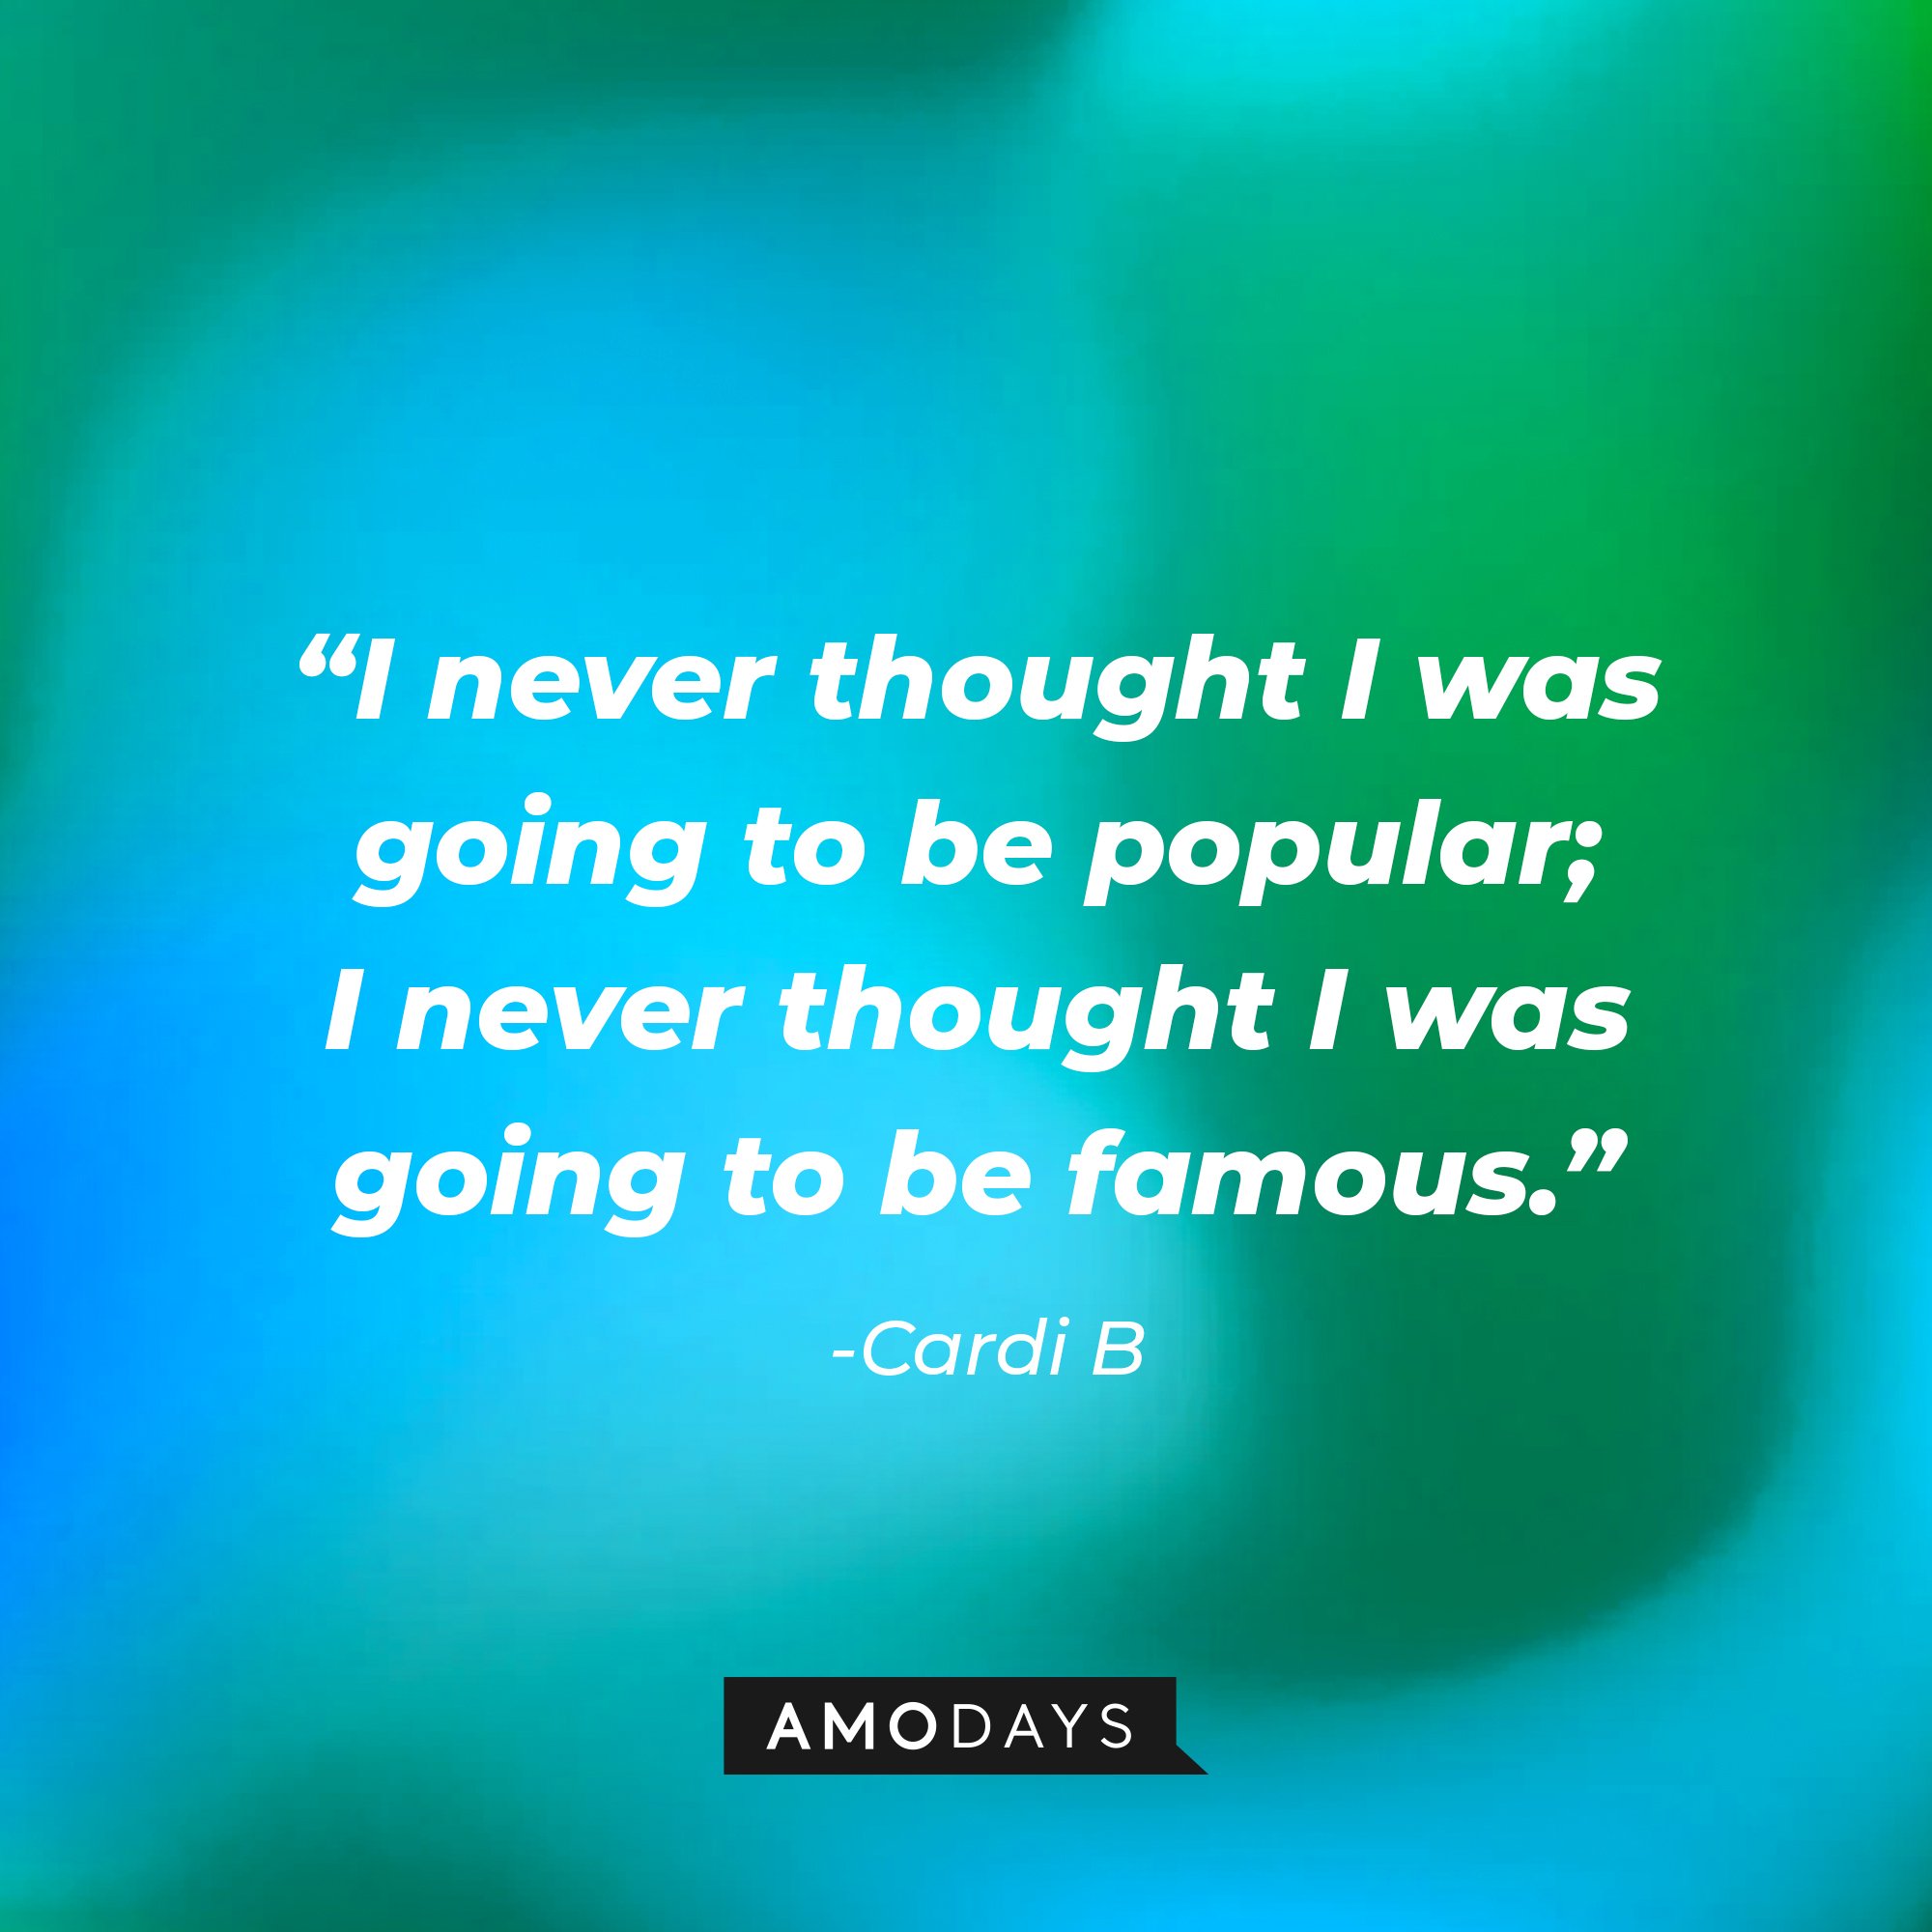 Cardi B's quotes: "I never thought I was going to be popular; I never thought I was going to be famous." | Image: AmoDays | Image: AmoDays